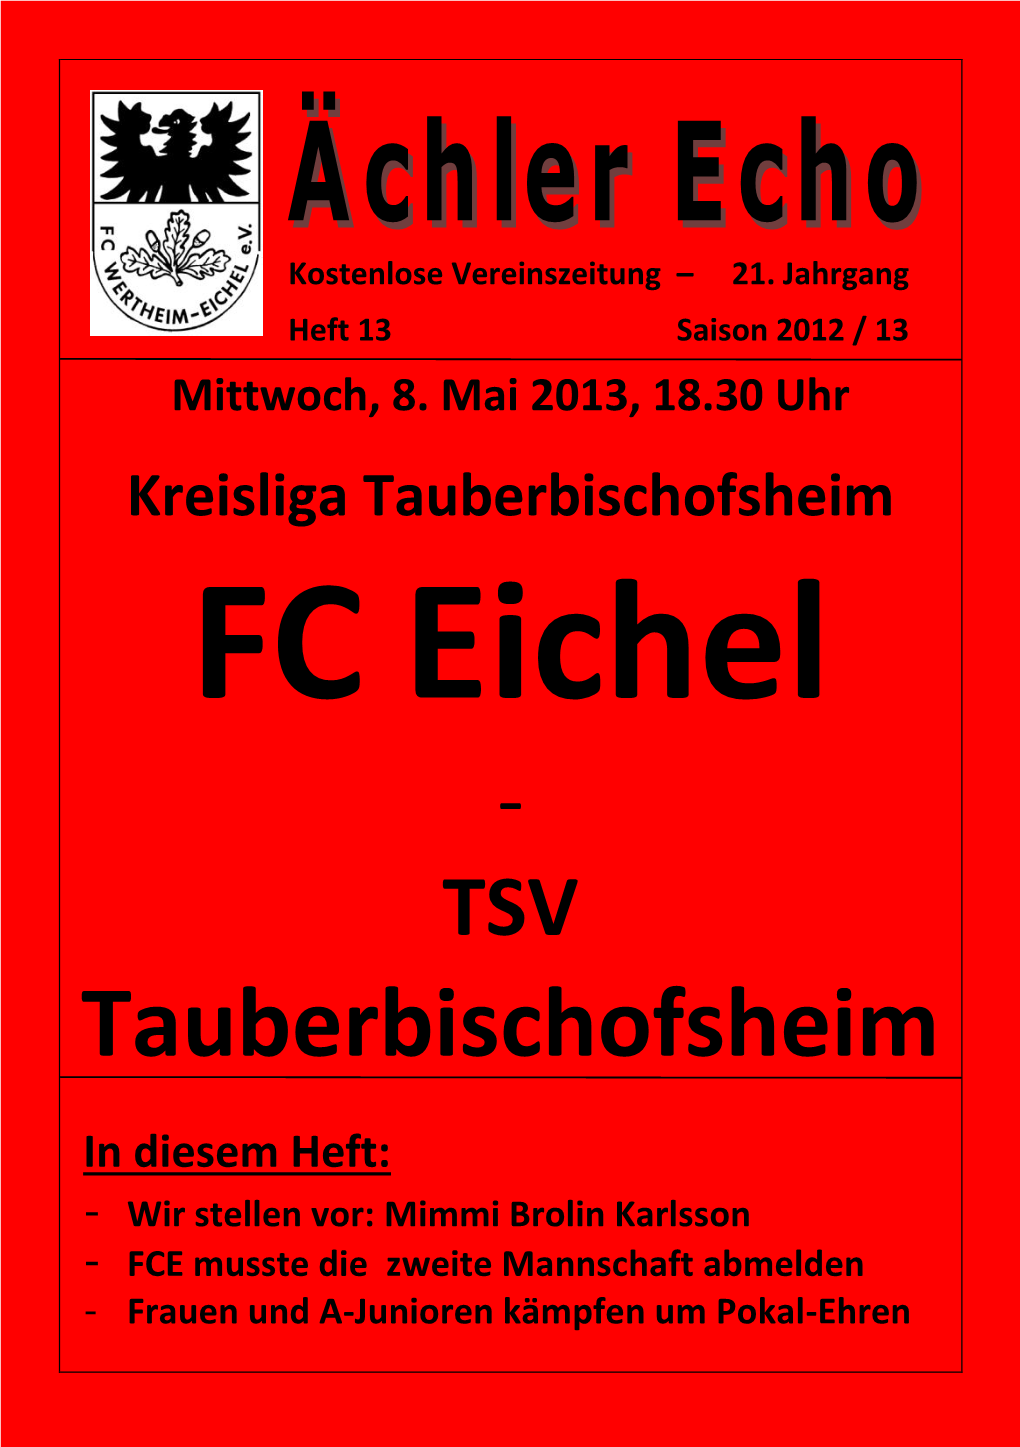 Tauberbischofsheim FC Eichel - TSV Tauberbischofsheim